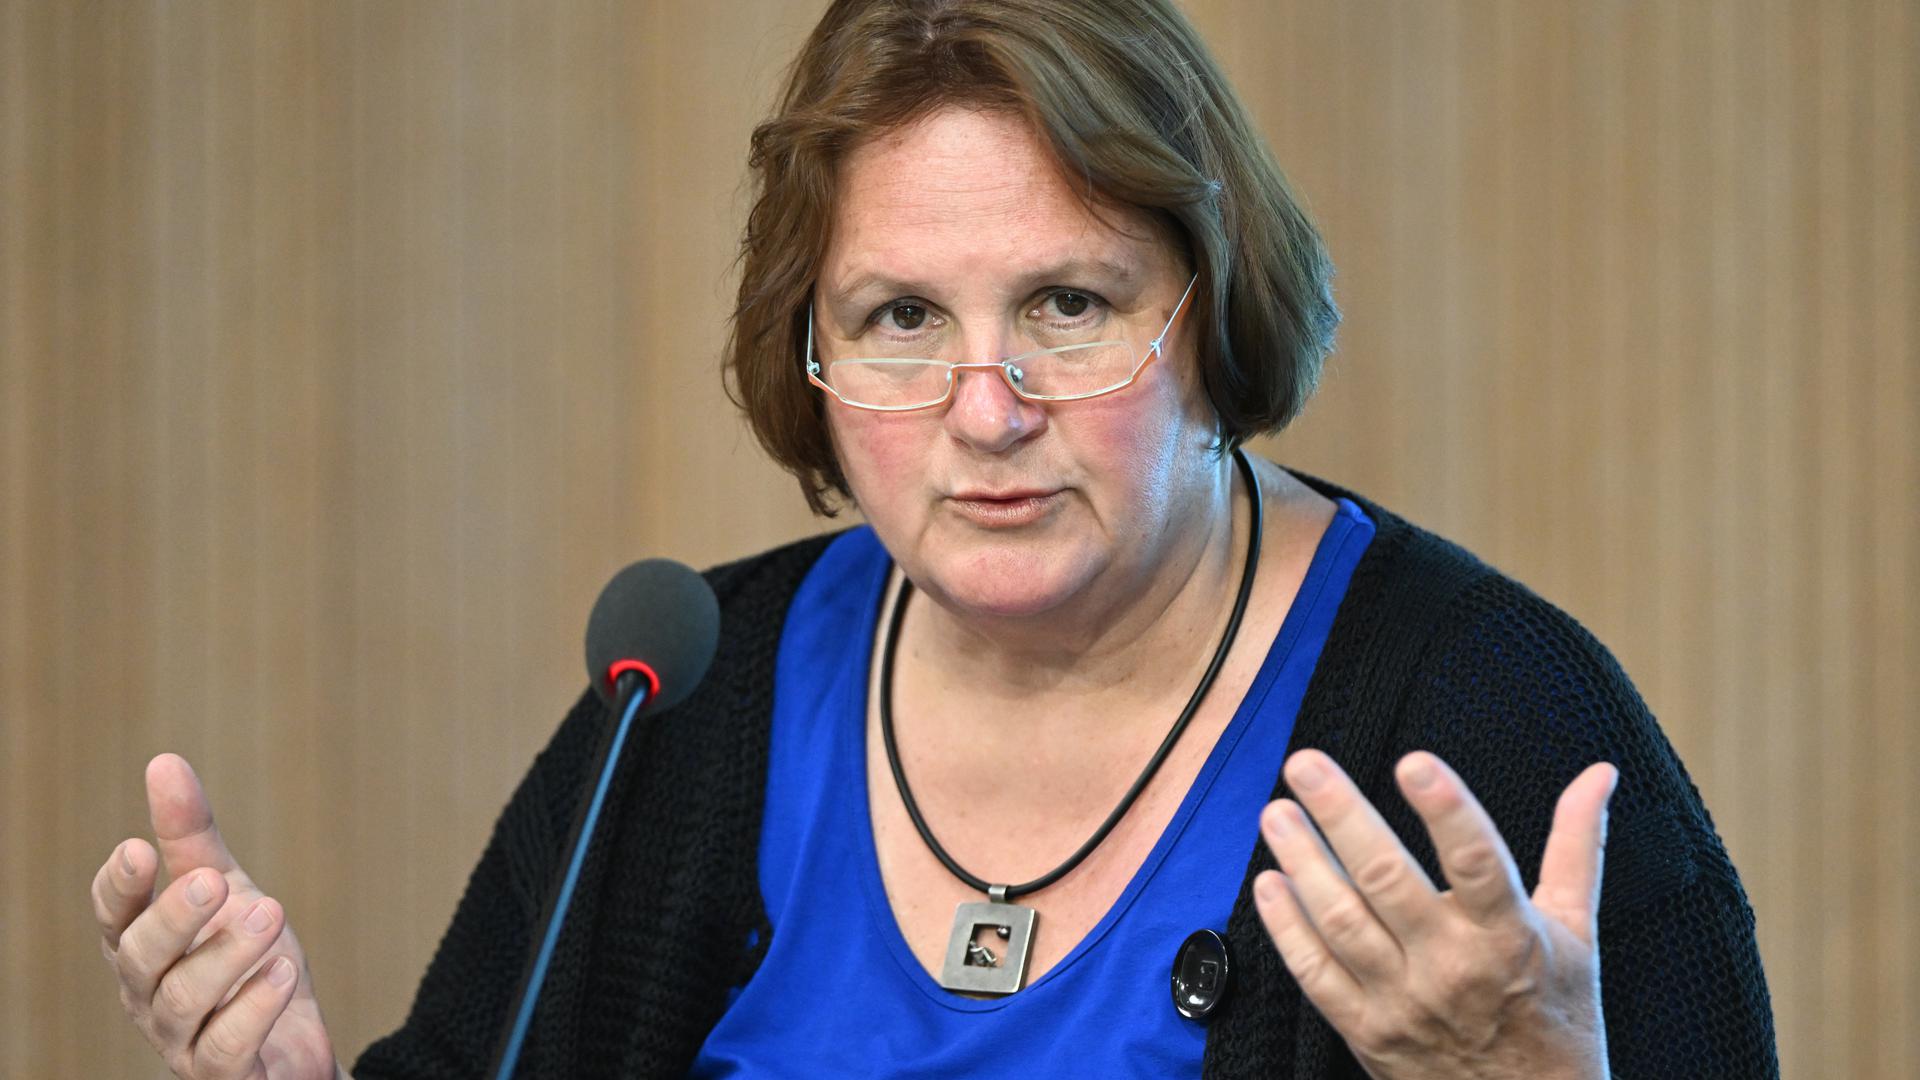 Theresa Schopper (Bündnis 90/Die Grünen), Kultusministerin von Baden-Württemberg, antwortet im Rahmen der Regierungs-Pressekonferenz im Landtag von Baden-Württemberg auf Fragen von Journalisten.